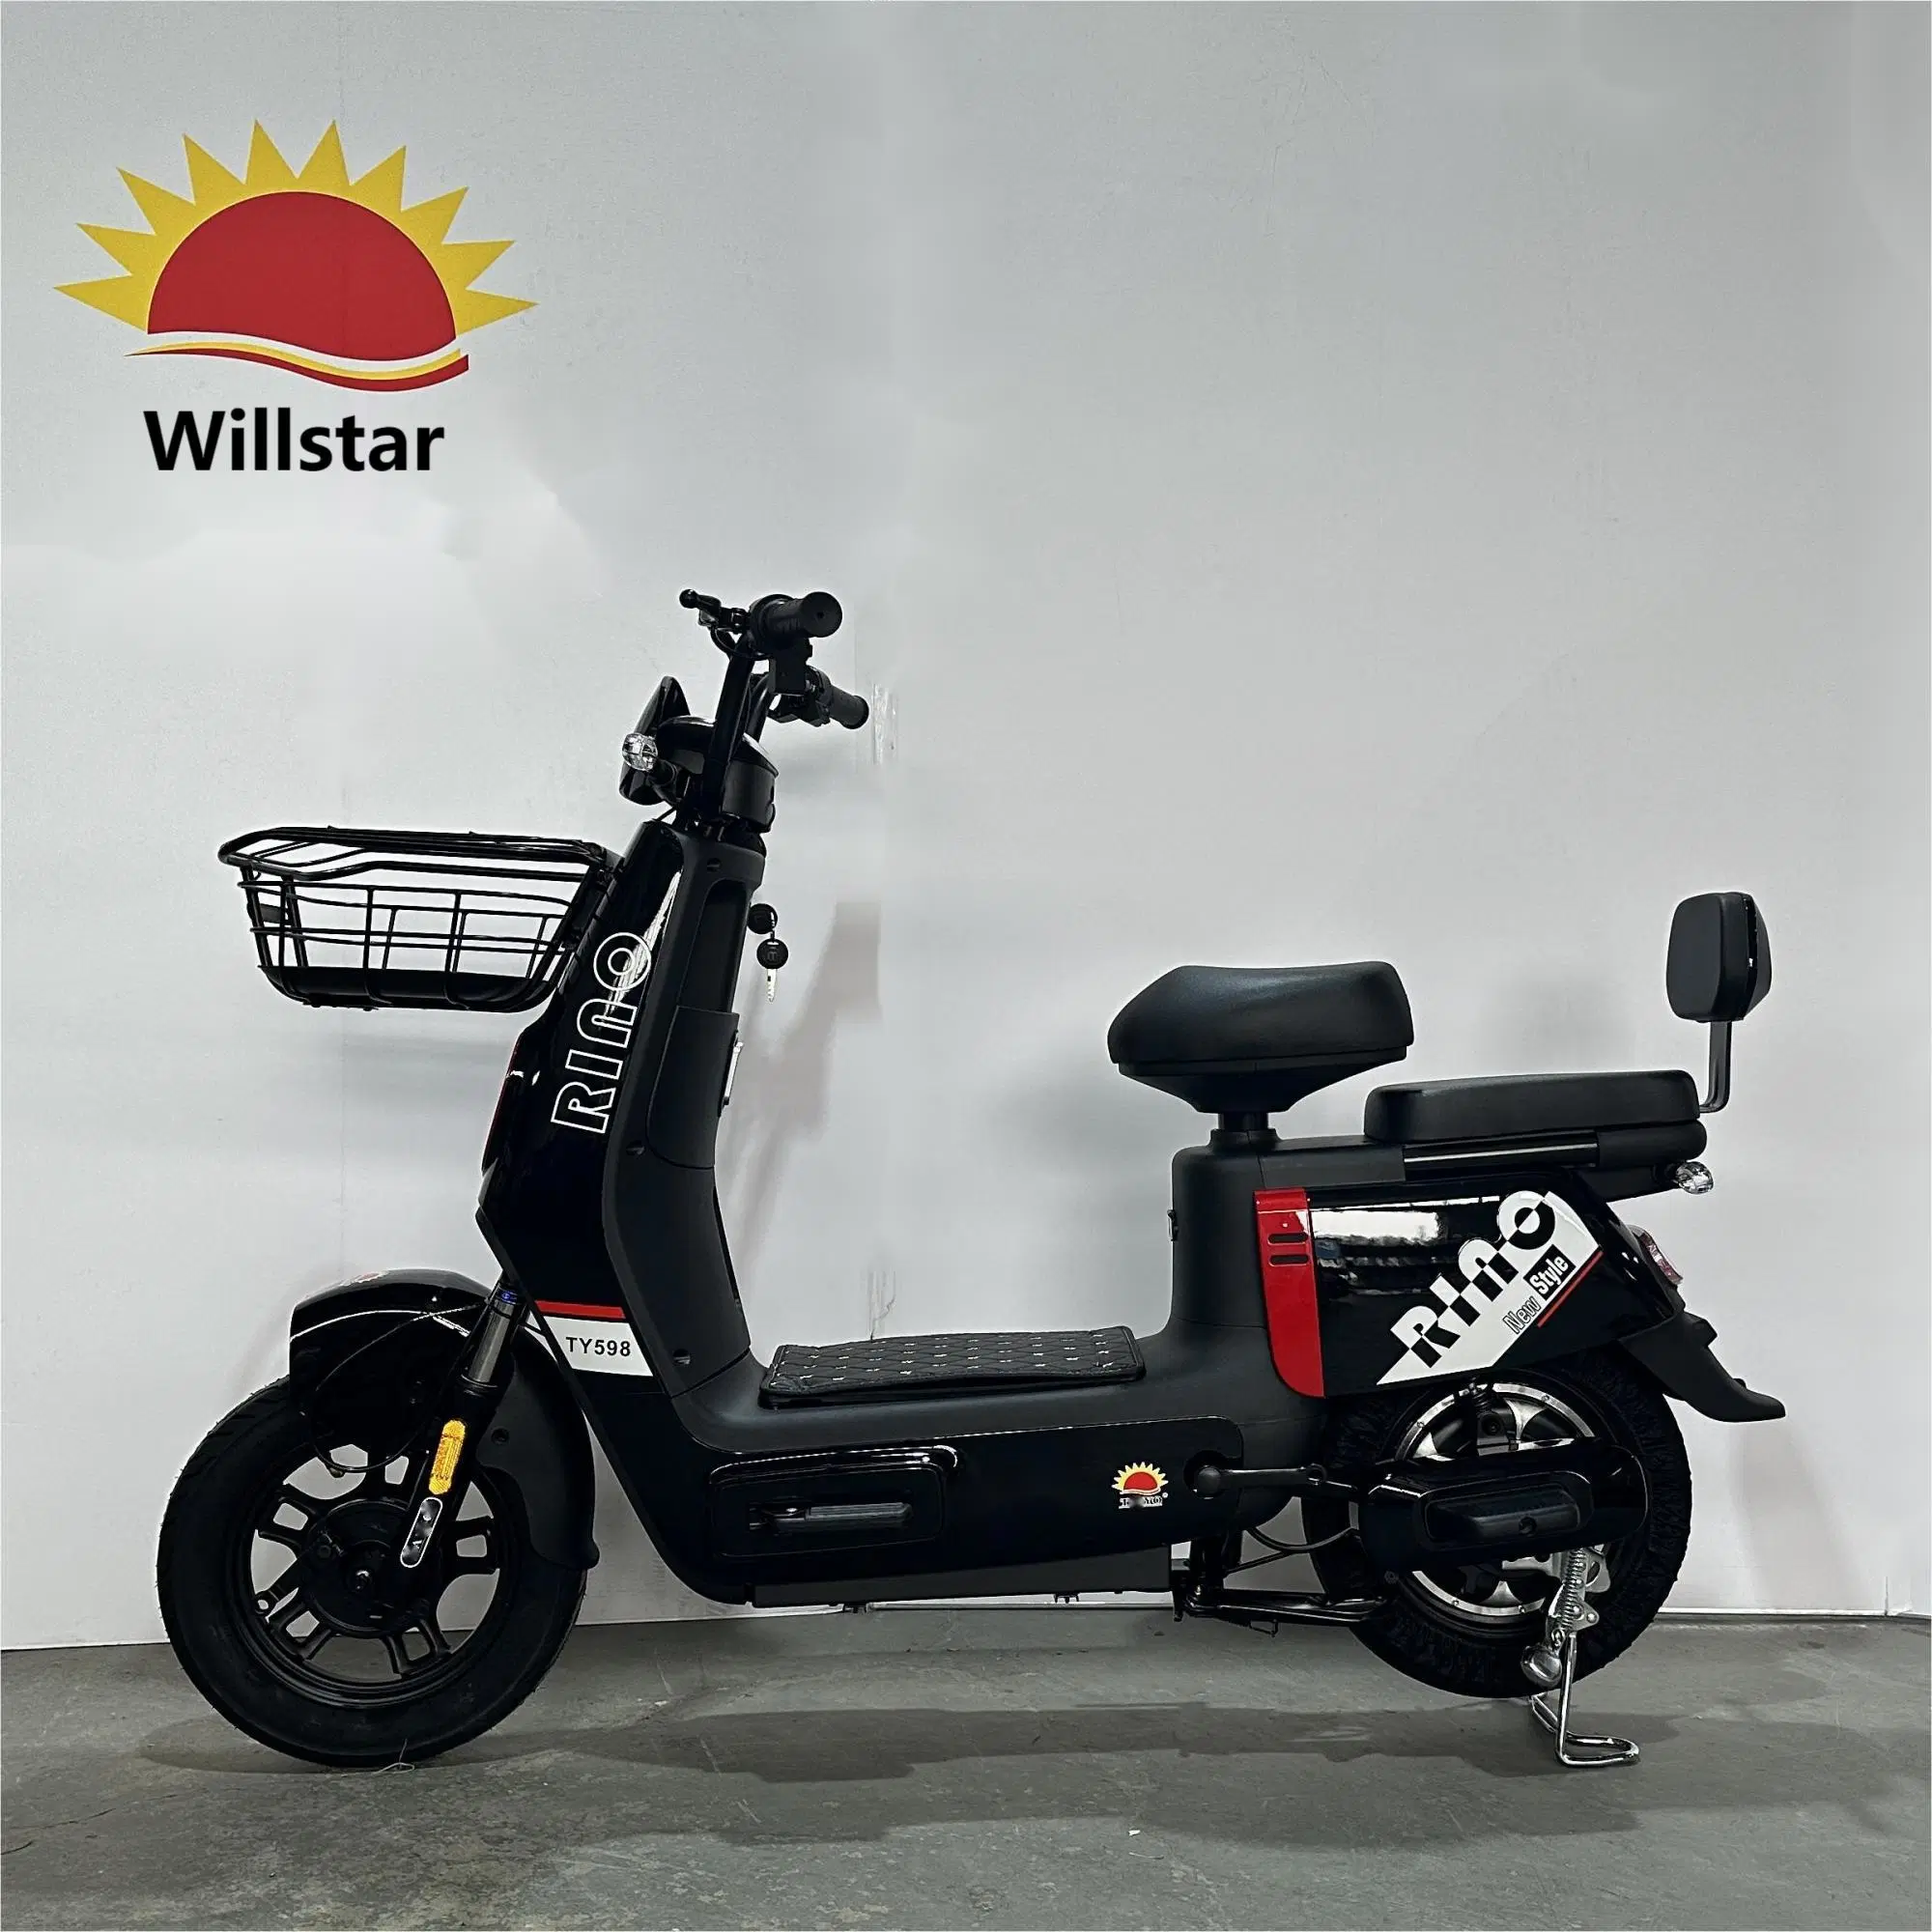 Vélo électrique Willstar Ty598 avec batterie au plomb Chilwee ou Tianneng 48V12ah Dernier modèle.